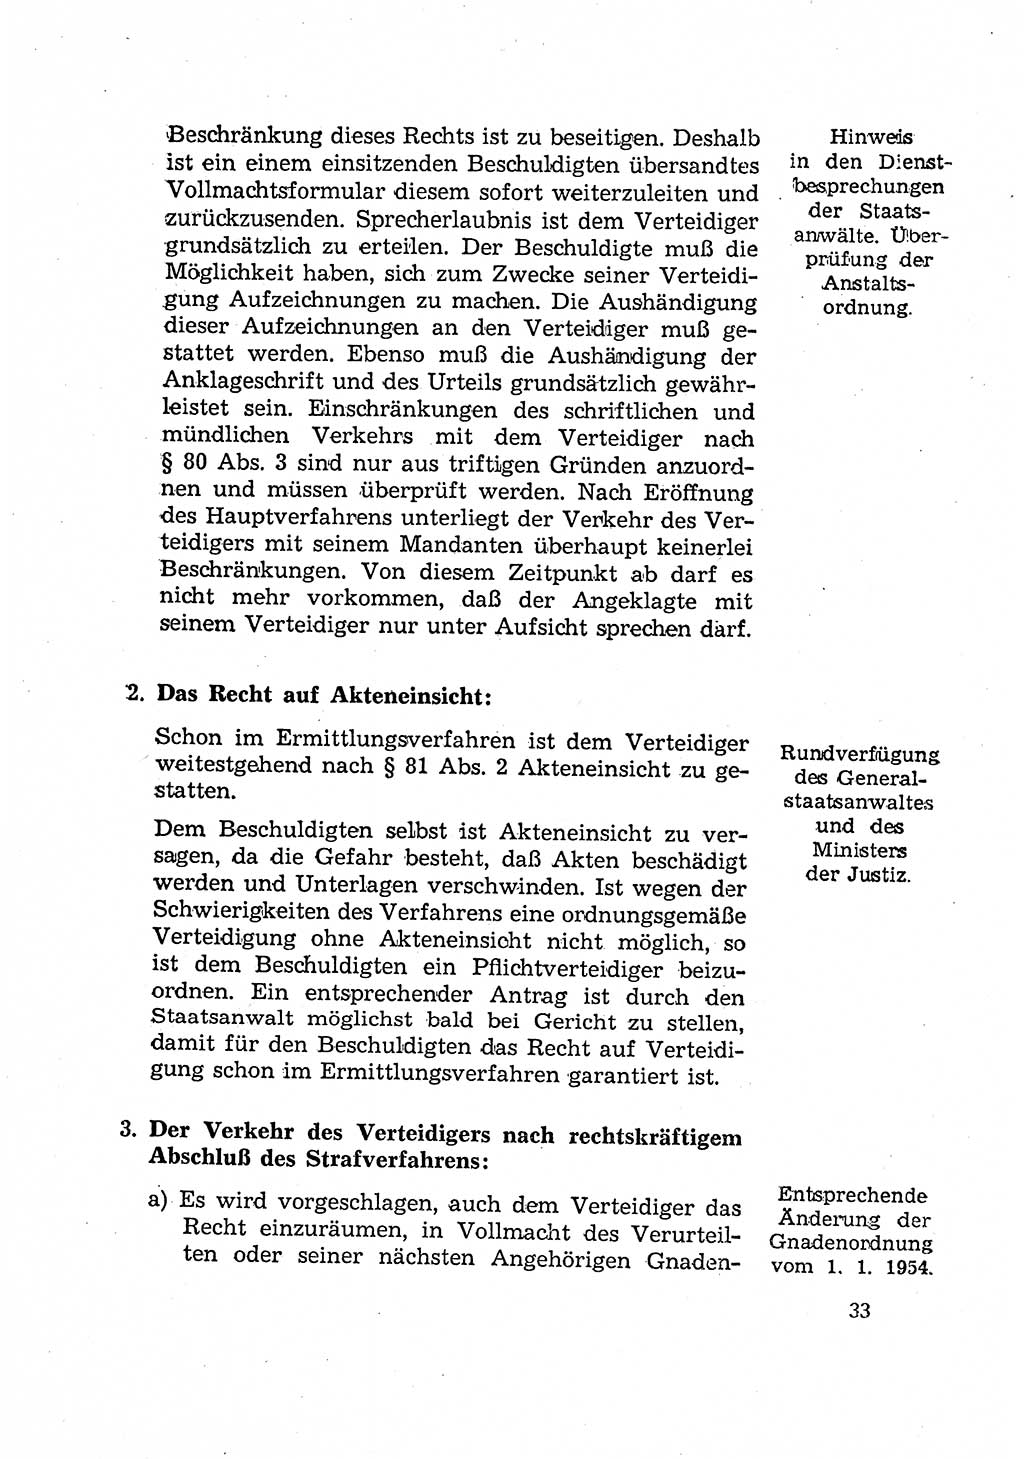 Bericht der Kommission zur Überprüfung der Anwendung der StPO (Strafprozeßordnung) [Deutsche Demokratische Republik (DDR)] 1956, Seite 33 (Ber. StPO DDR 1956, S. 33)